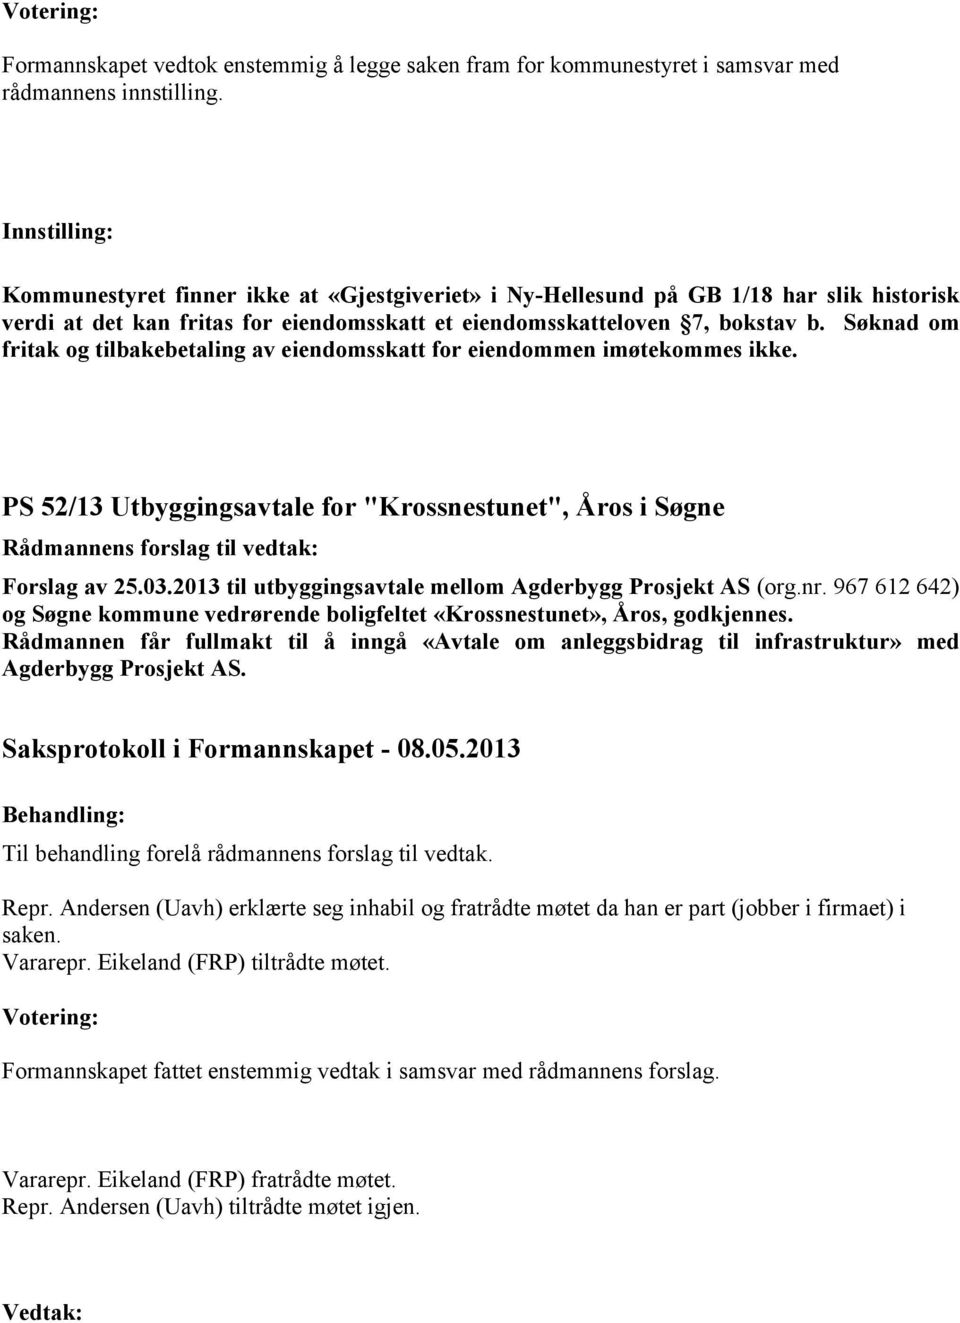 Søknad om fritak og tilbakebetaling av eiendomsskatt for eiendommen imøtekommes ikke. PS 52/13 Utbyggingsavtale for "Krossnestunet", Åros i Søgne Forslag av 25.03.